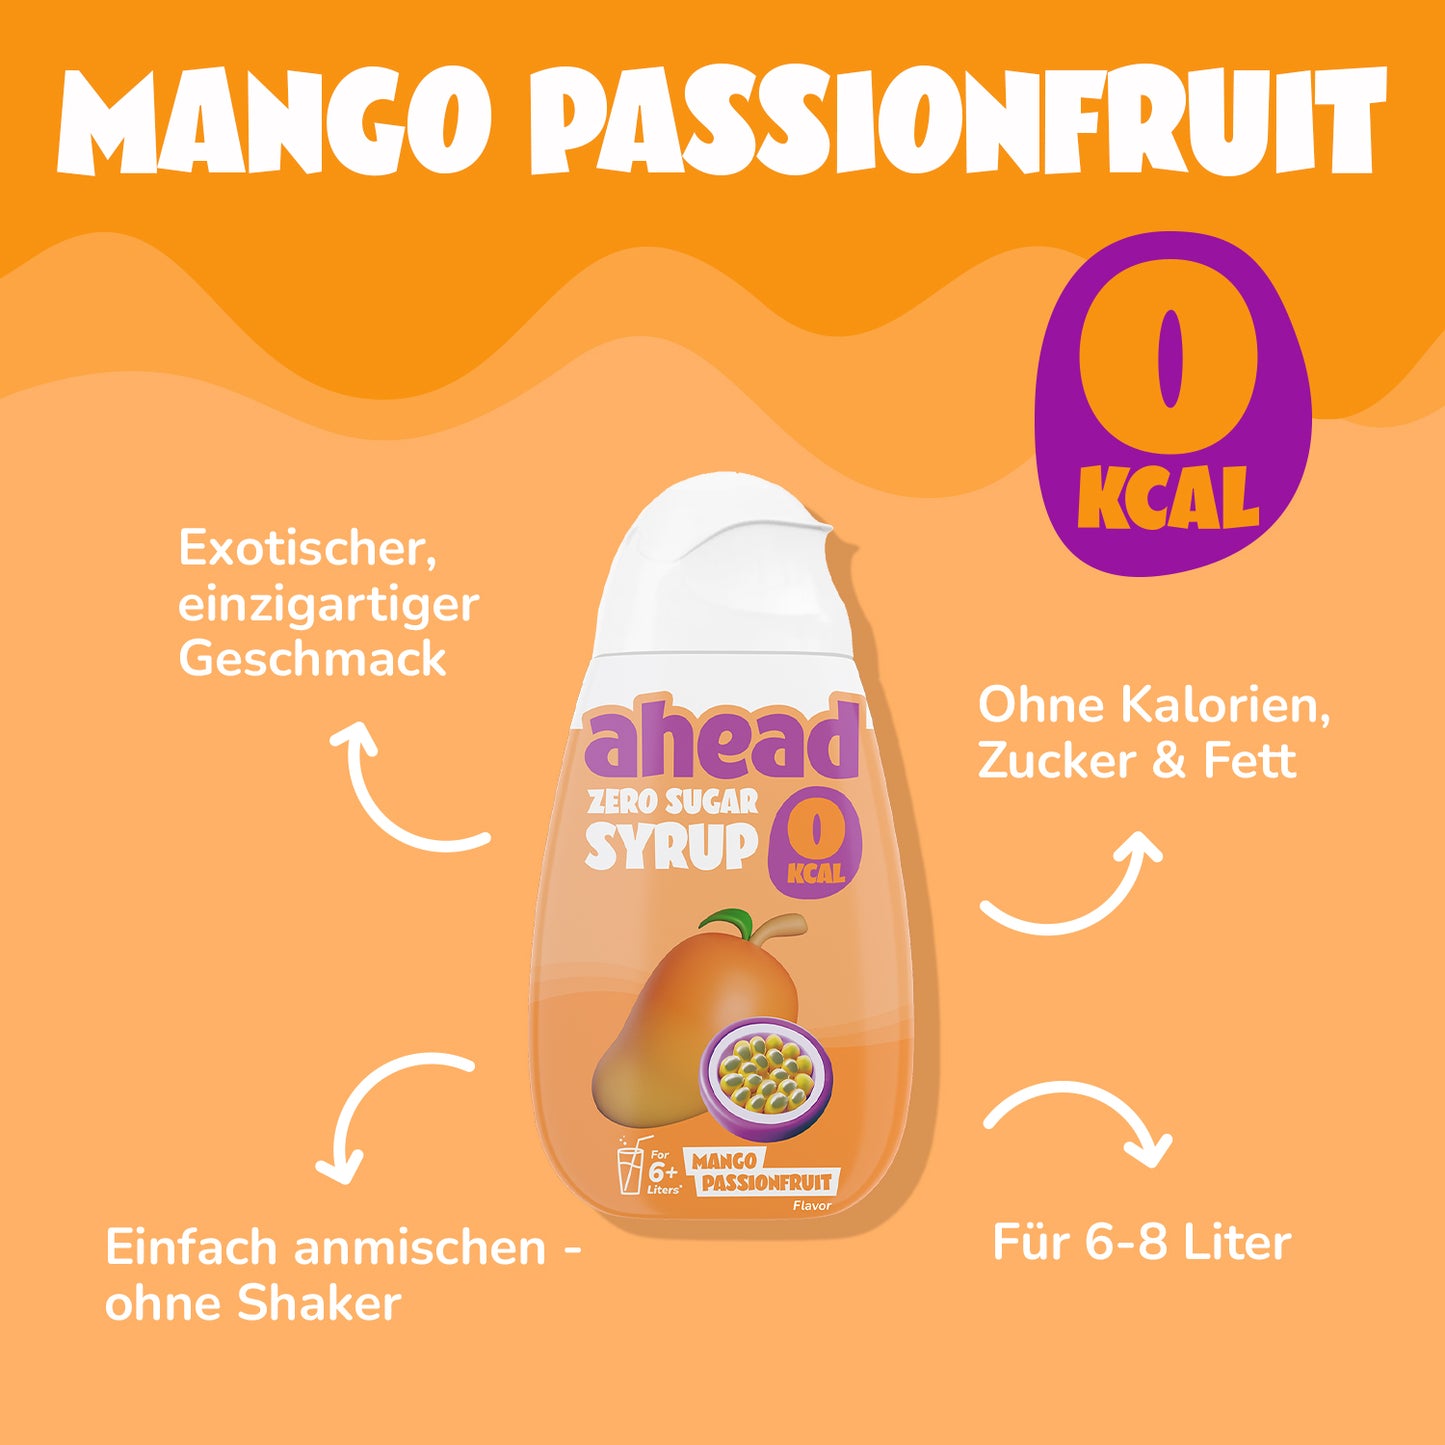 mango passion fruit